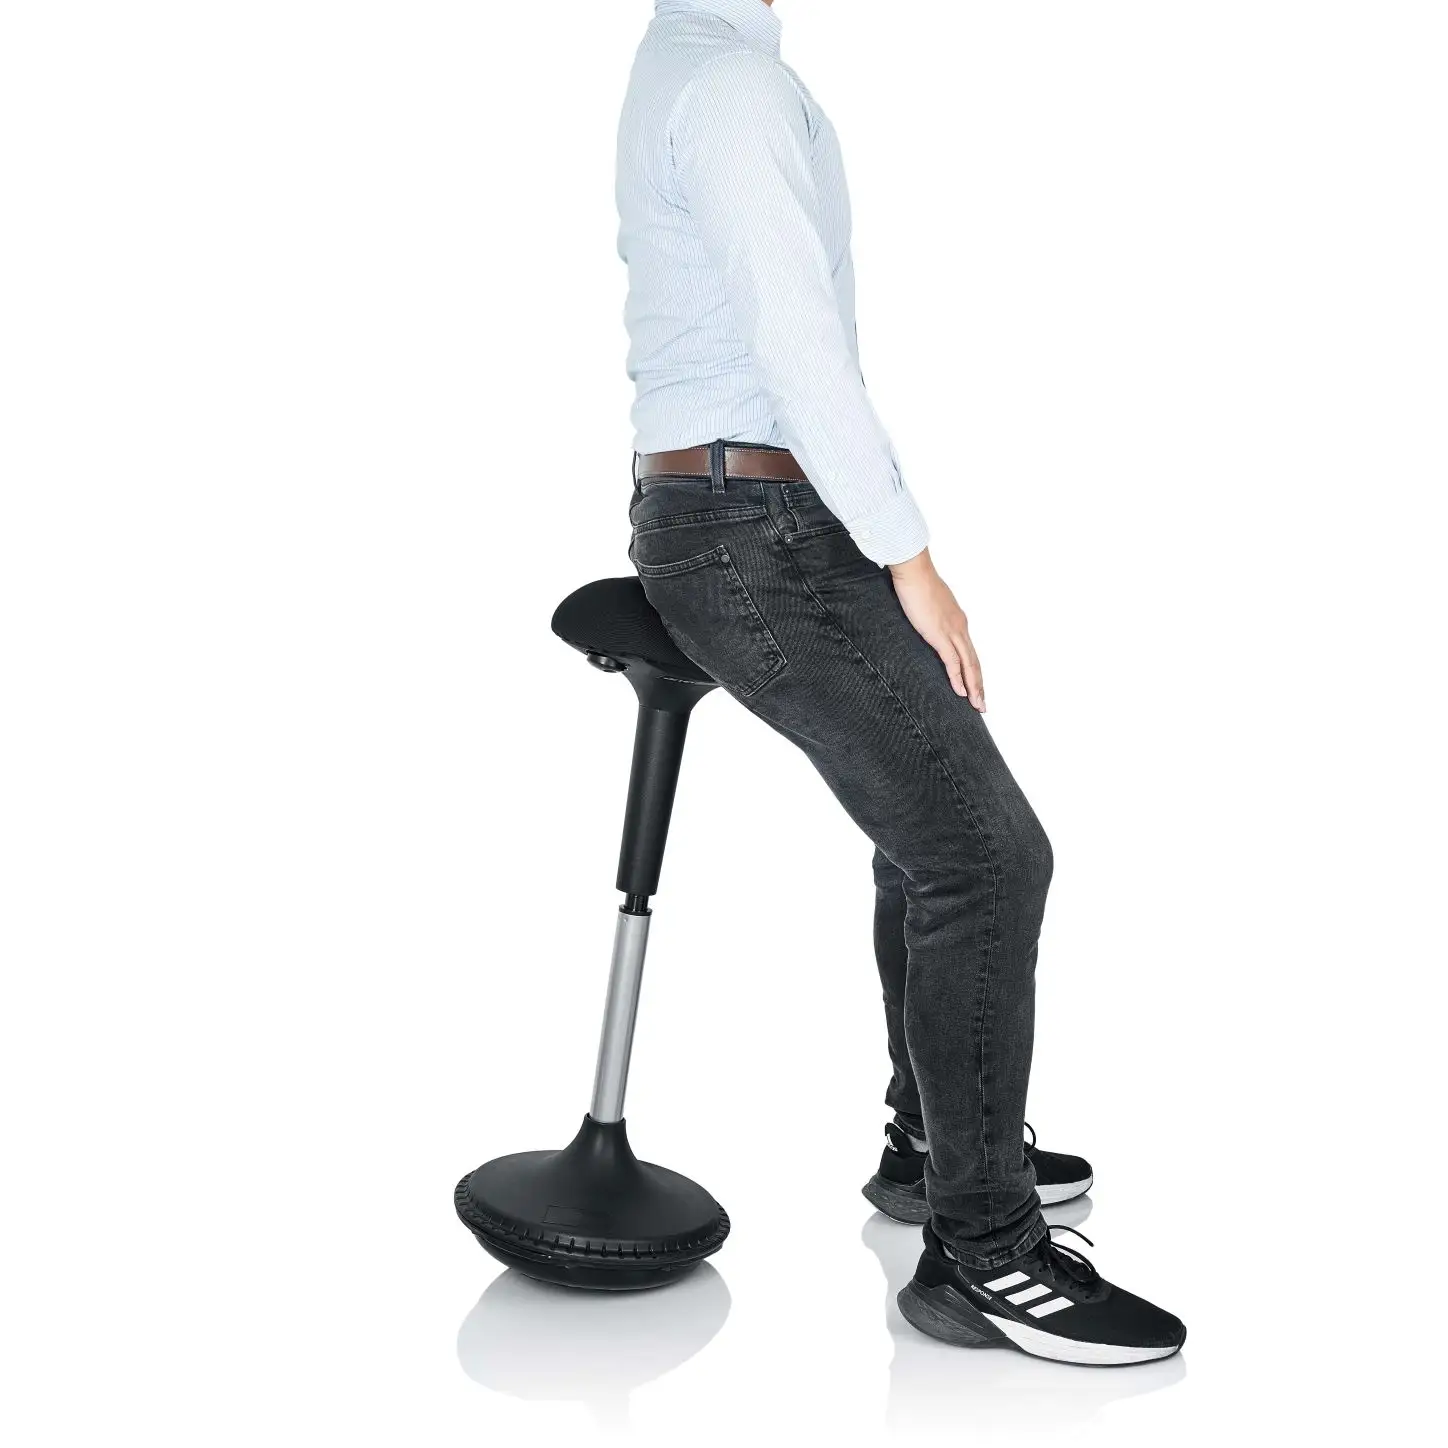 Yüksek kaliteli ergonomik ofis mobilyaları yalpalama tabure yüksekliği ayarlanabilir ofis wobble sandalye